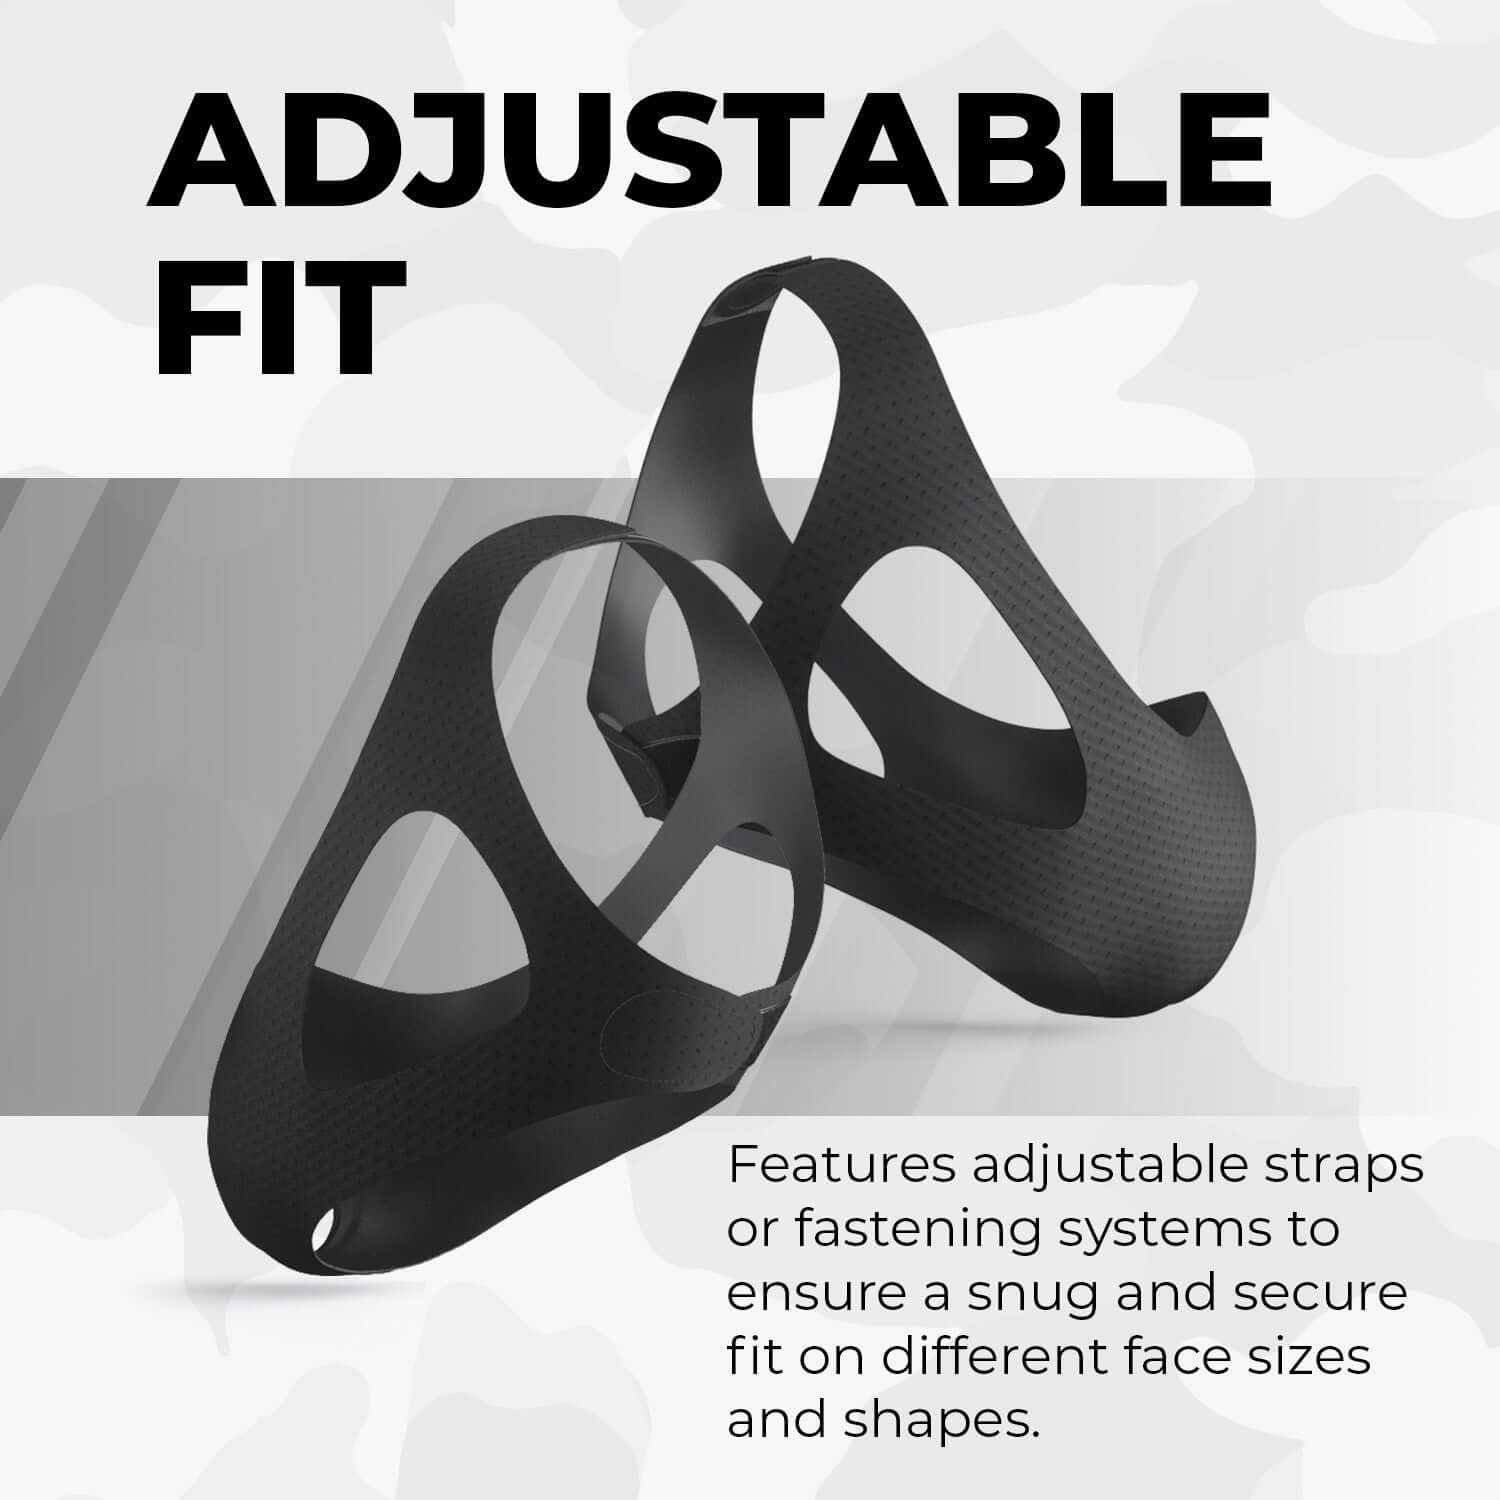 Tactical Filtration Mask showing adjustable fit